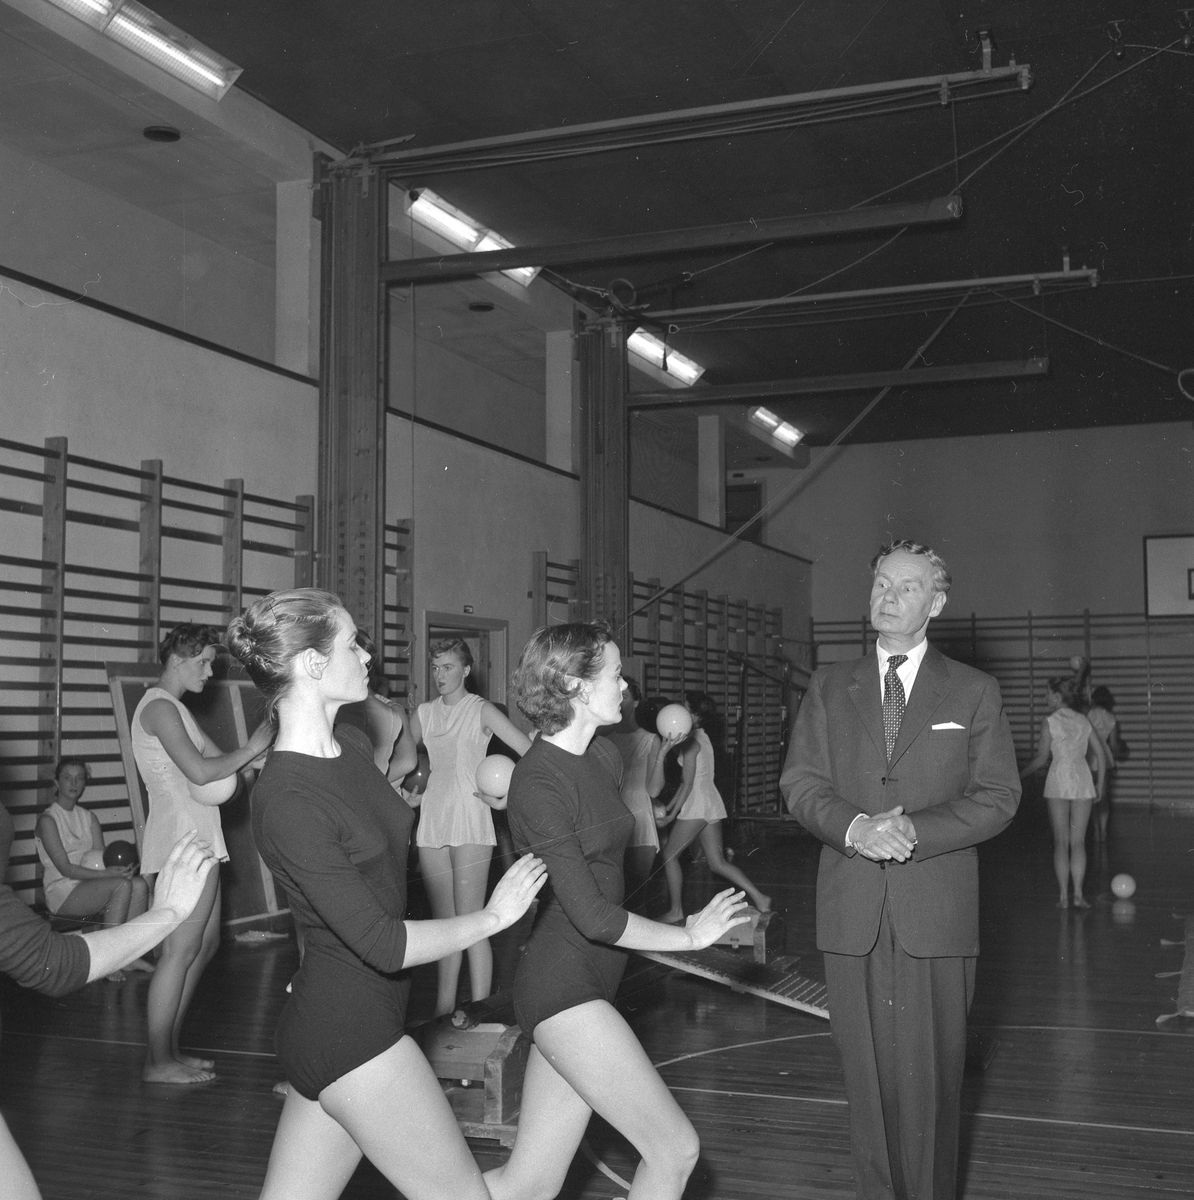 Gymnastikafton på Idrottshuset.
November 1956.